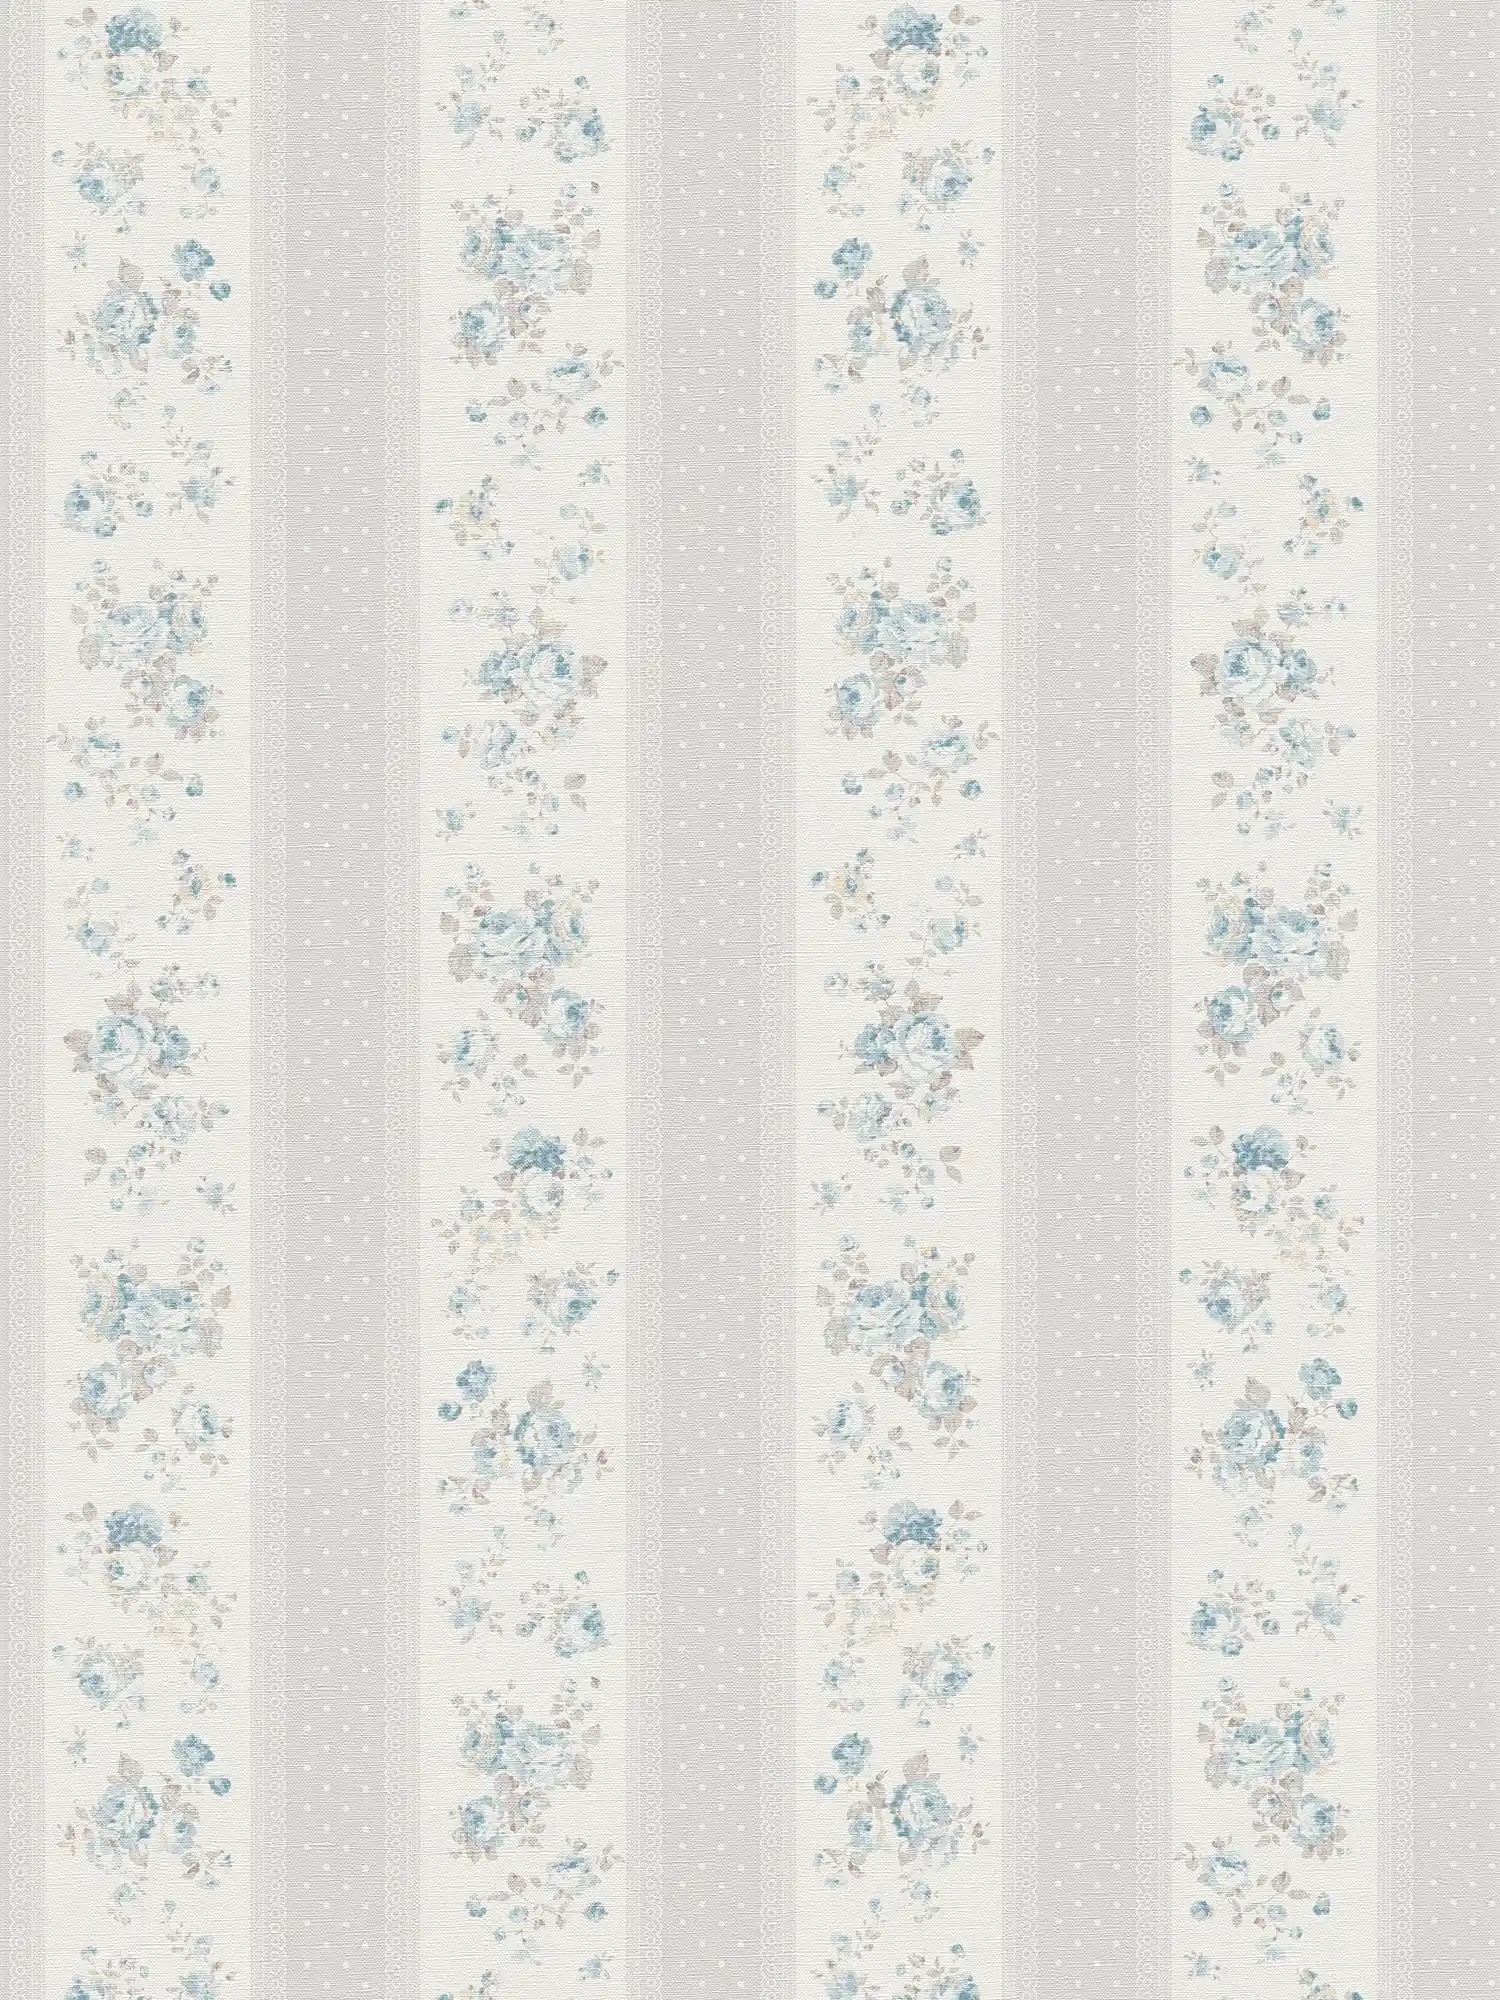         Carta da parati in tessuto non tessuto a righe punteggiate e floreali - grigio, bianco, blu
    